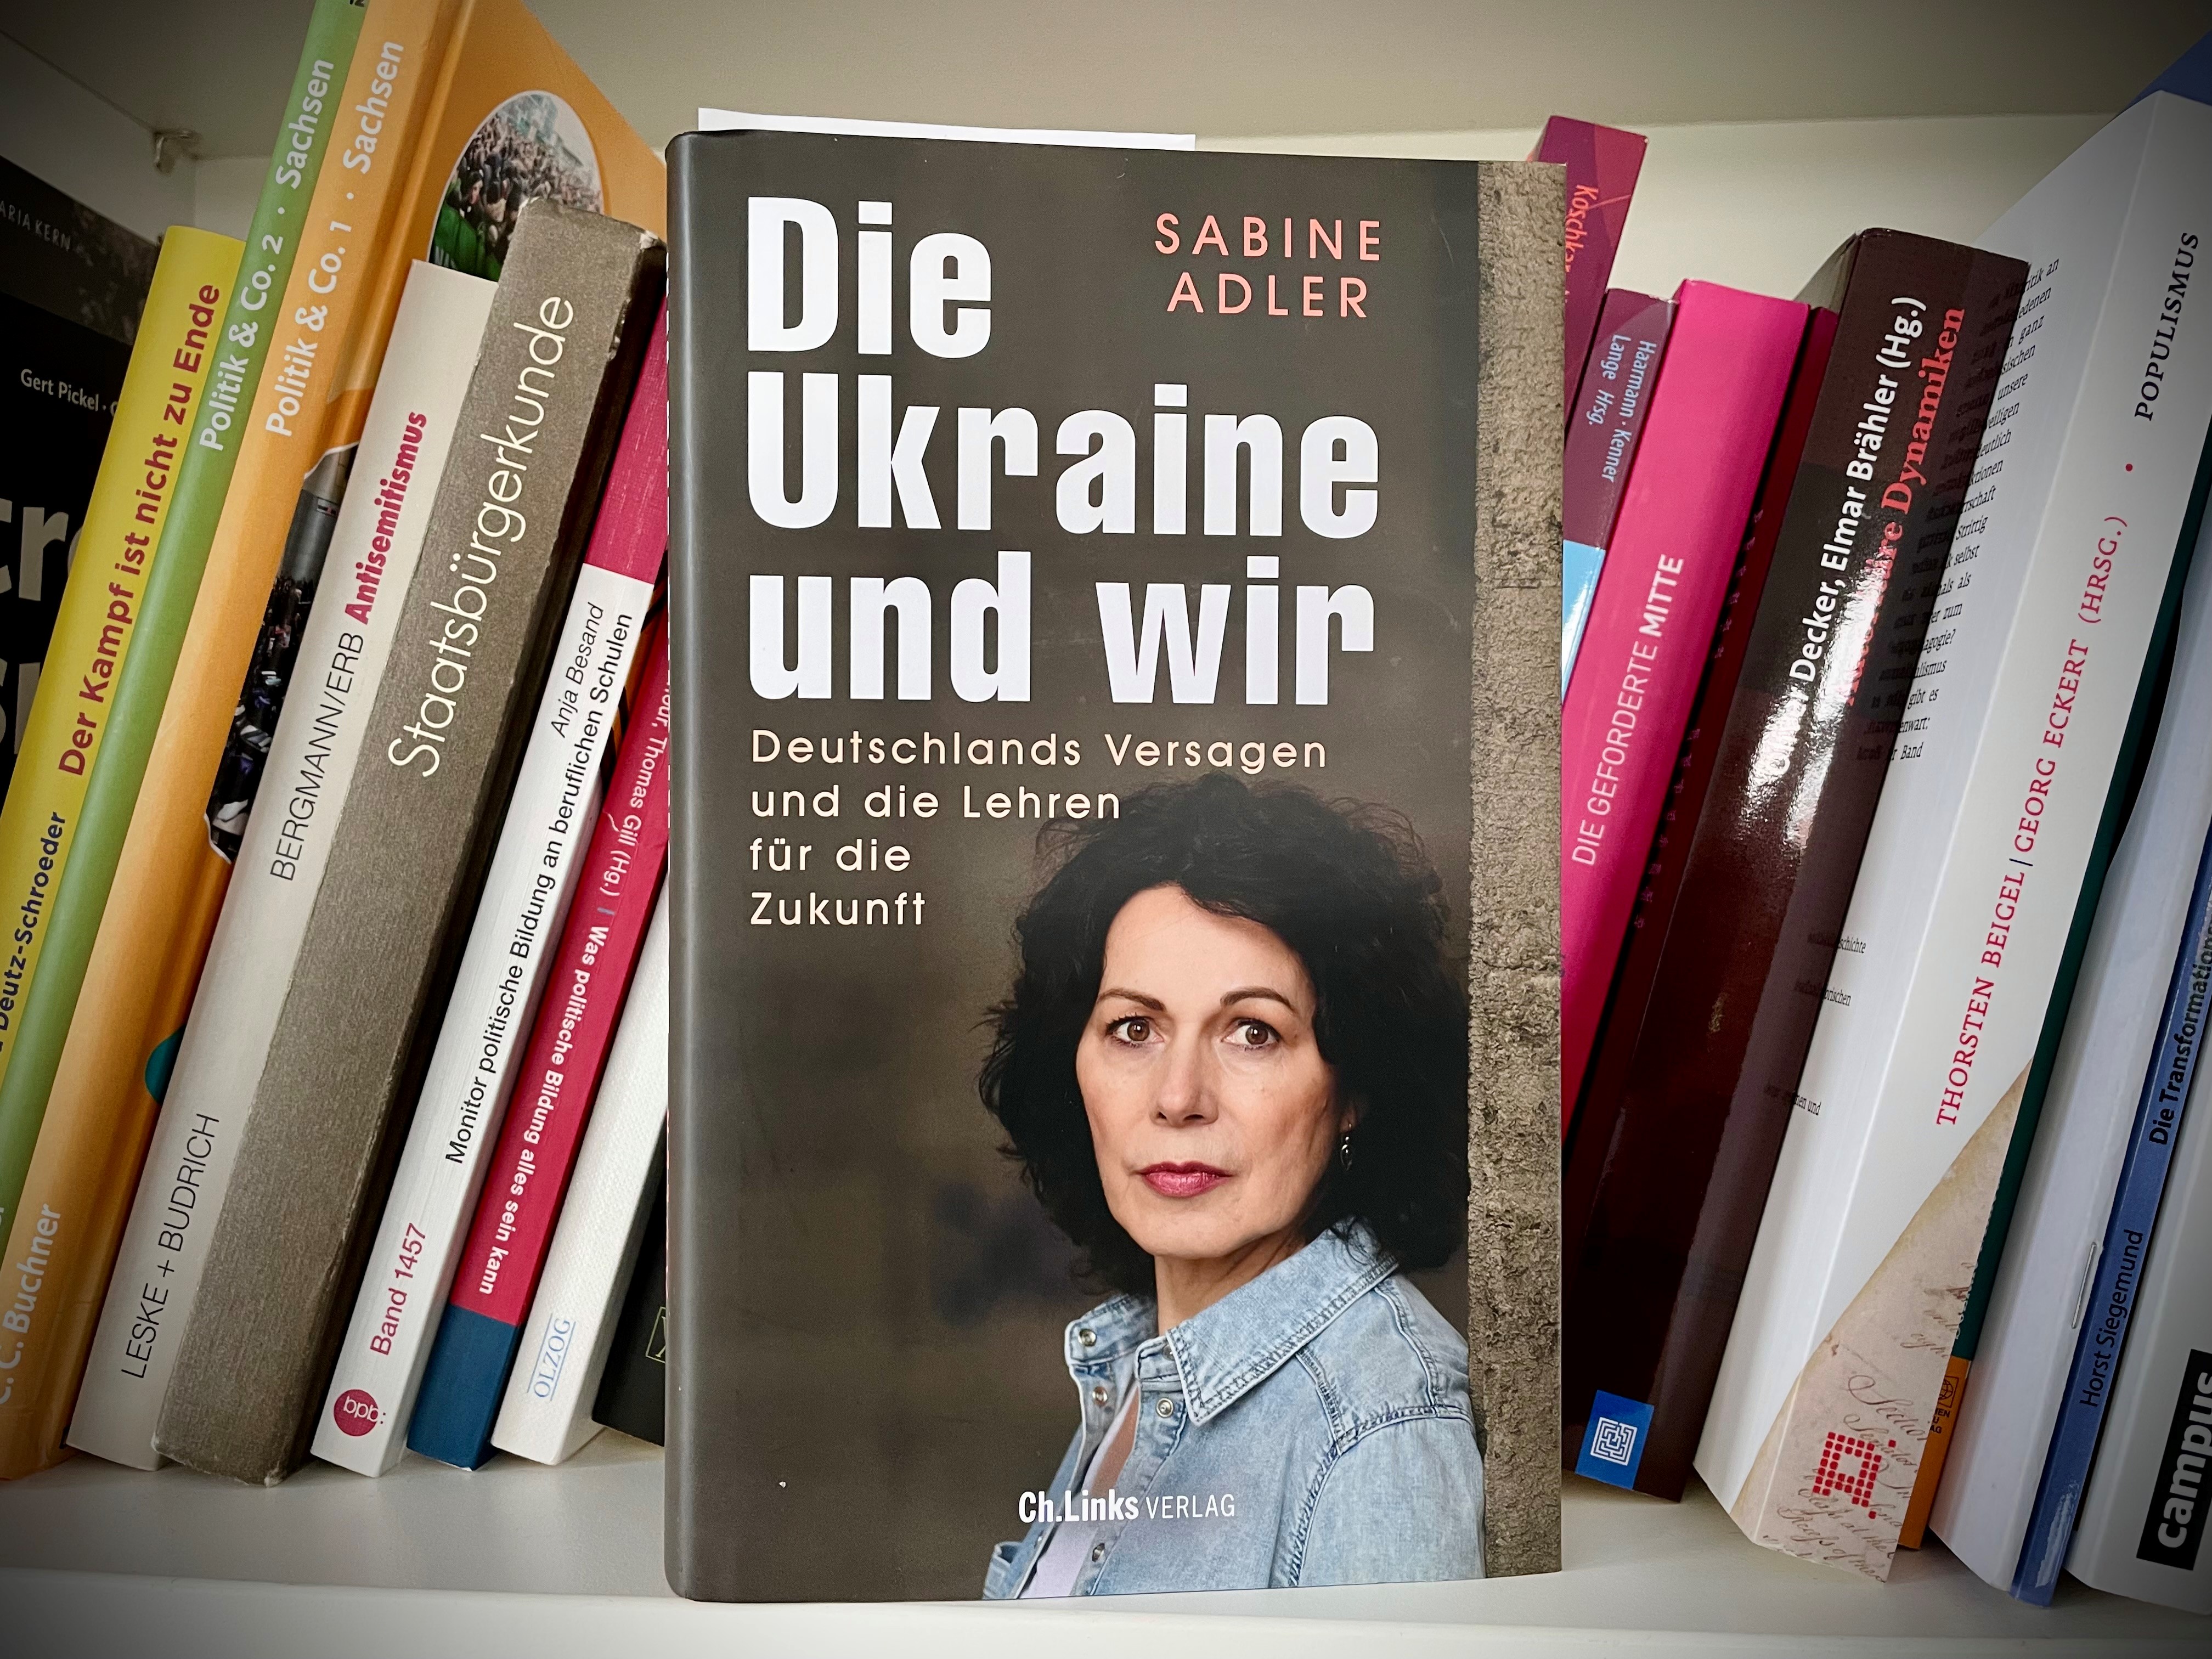 Buchcover von Sabine Adler mit dem Titel "Die Ukraine und wir", verlegt von Ch.Links.